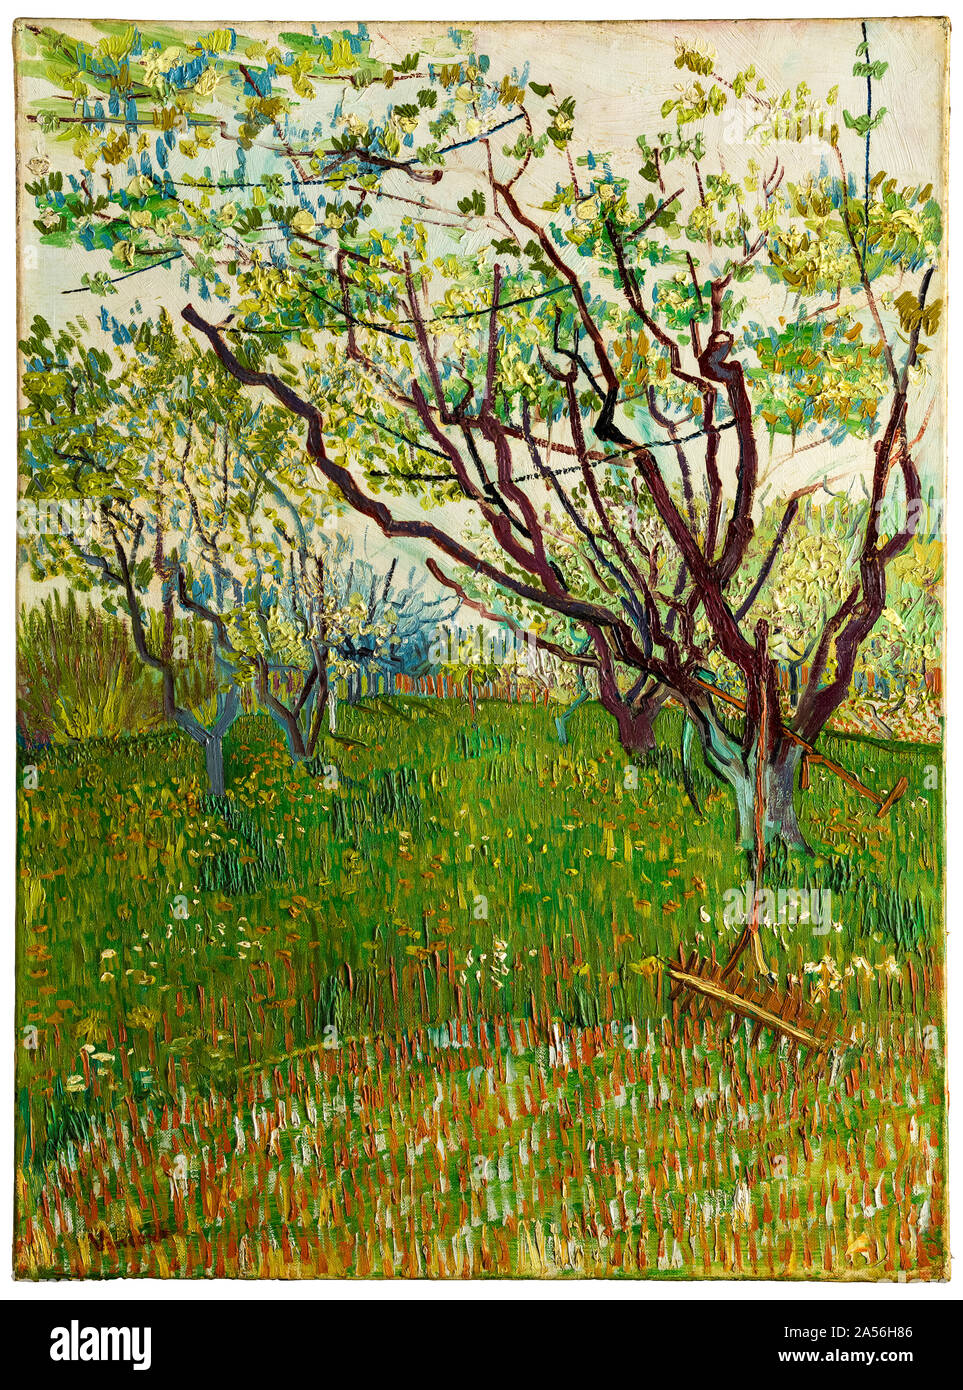 Vincent van Gogh, la peinture de paysage, verger floraison, 1888 Banque D'Images